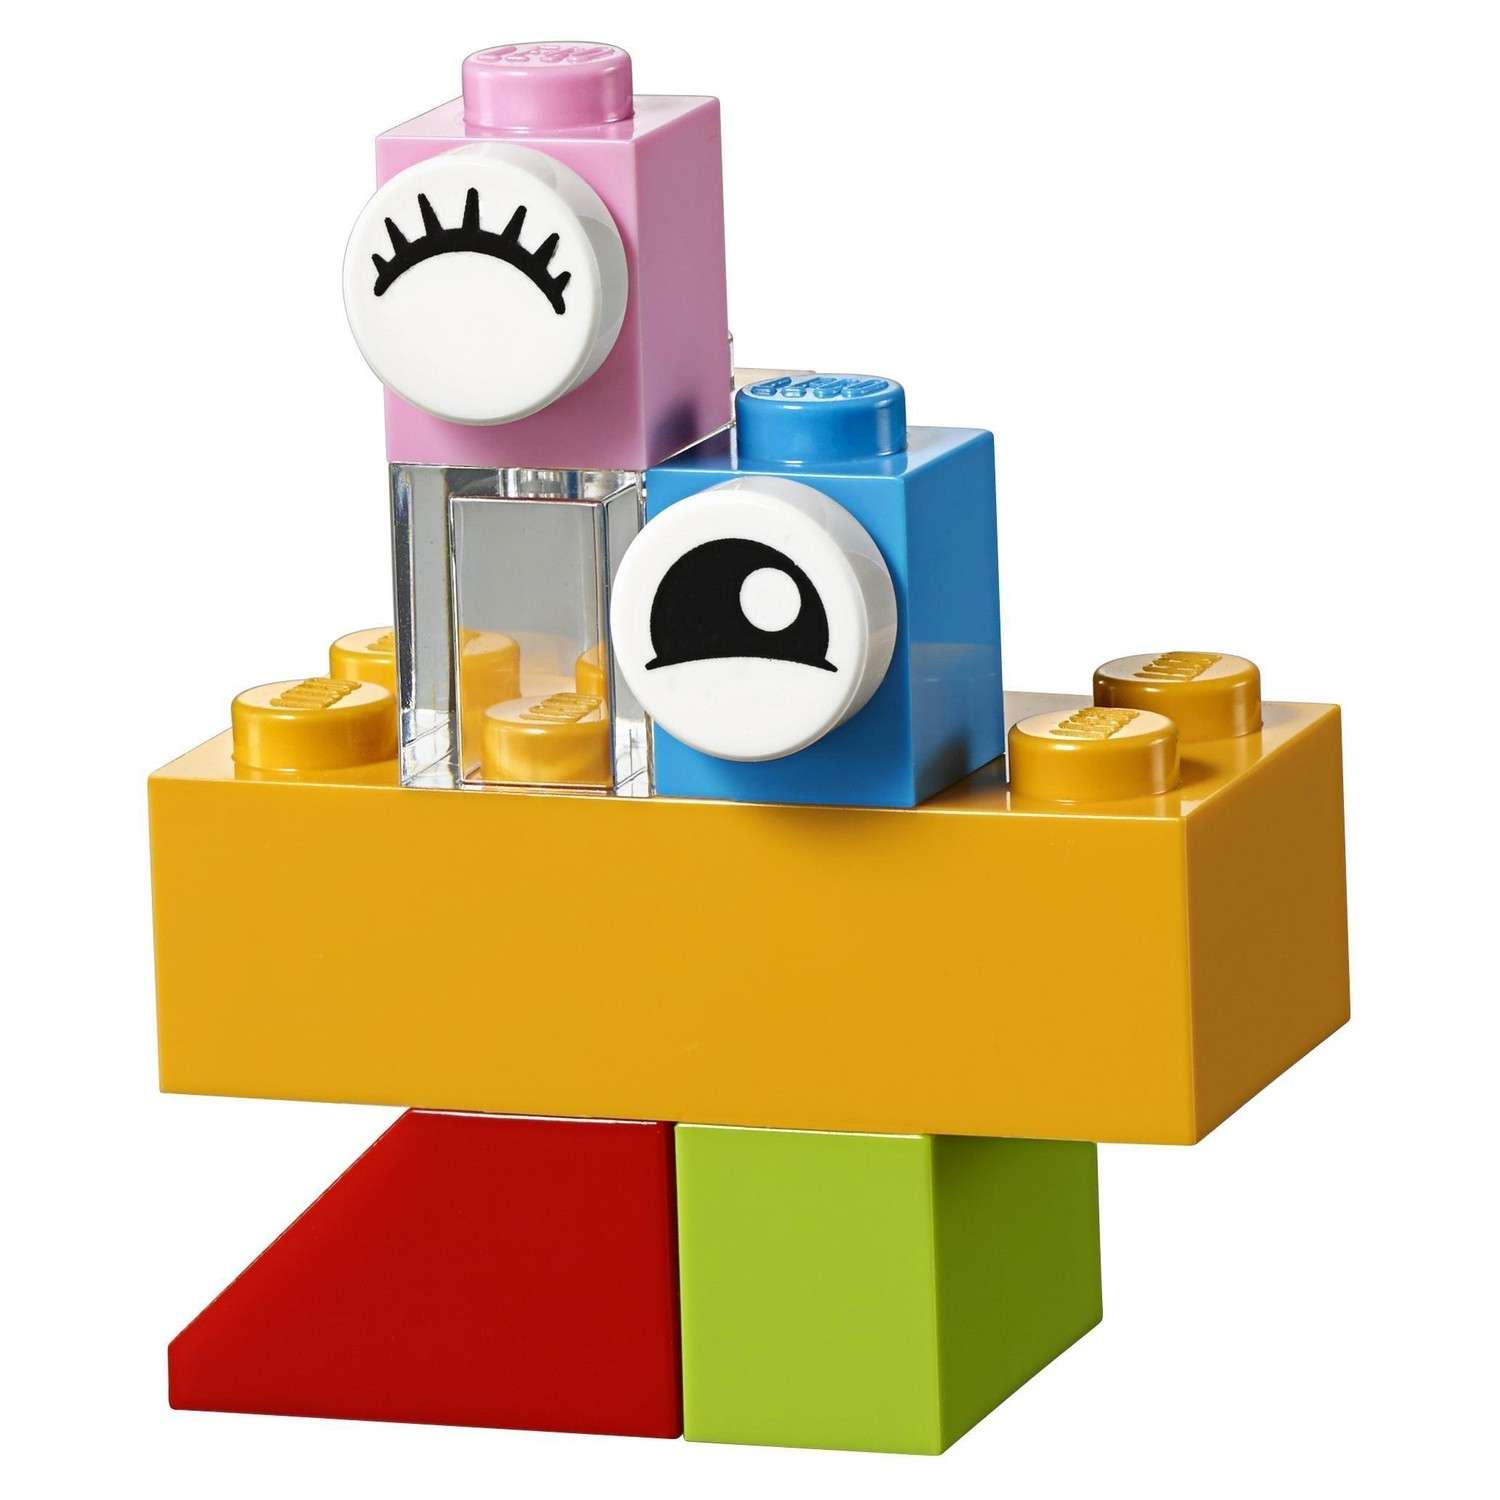 Конструктор LEGO Чемоданчик для творчества и конструирования Classic (10713) - фото 10